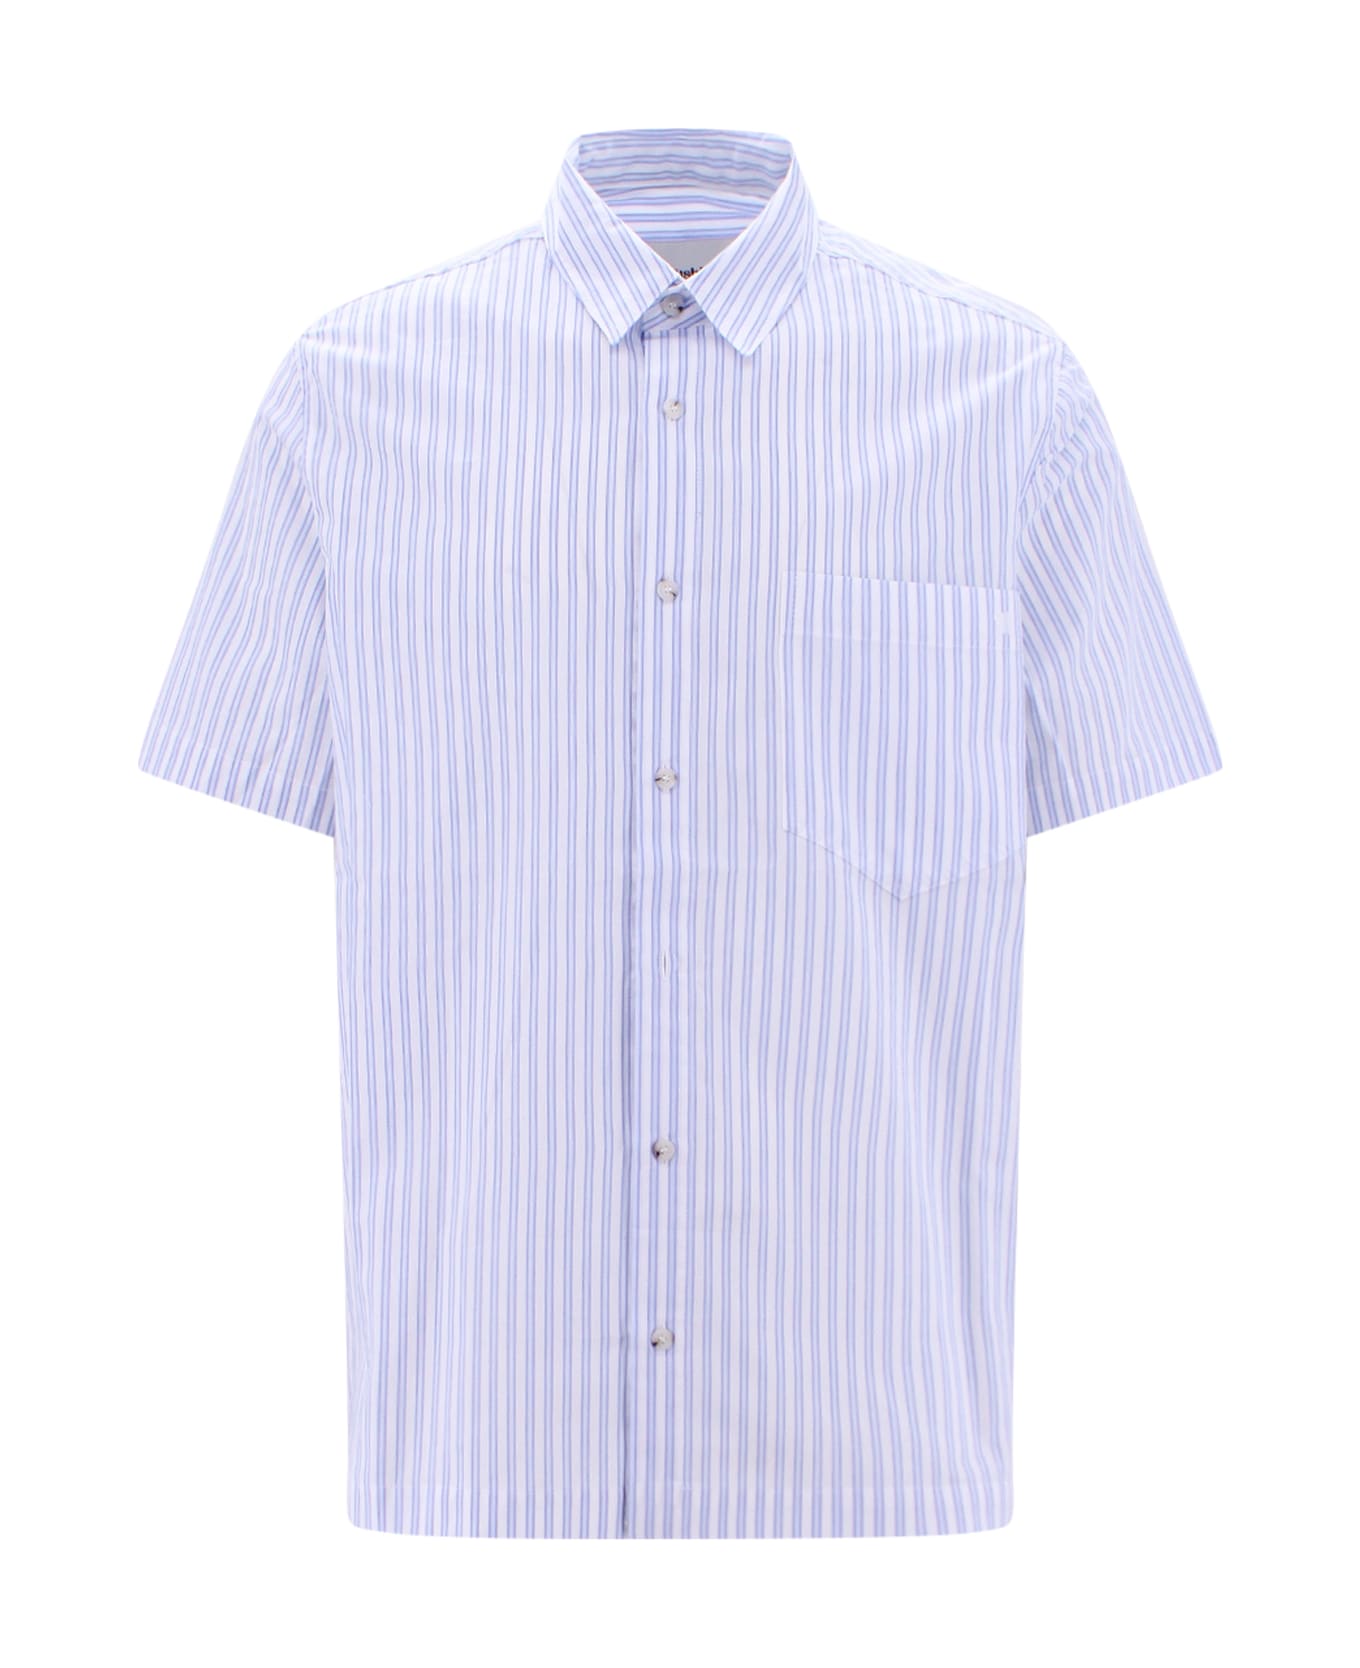 Nanushka Adam Shirt - White シャツ